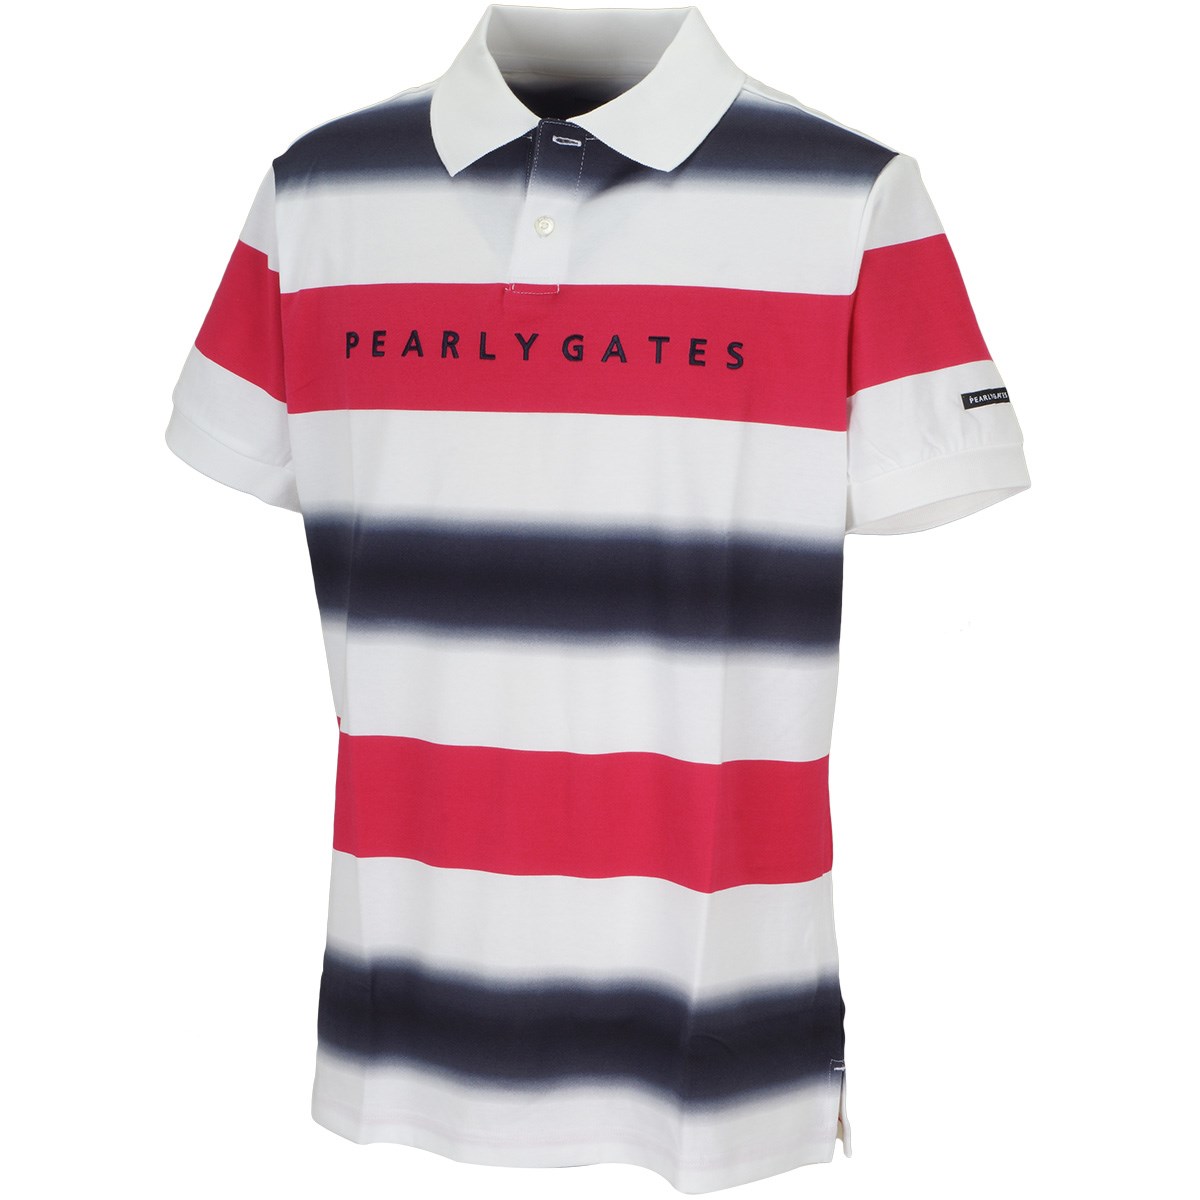 「パーリーゲイツ 天竺 ボーダー柄半袖ポロシャツ 」（ポロシャツ・シャツ）- ゴルフ(GOLF)用品のネット通販